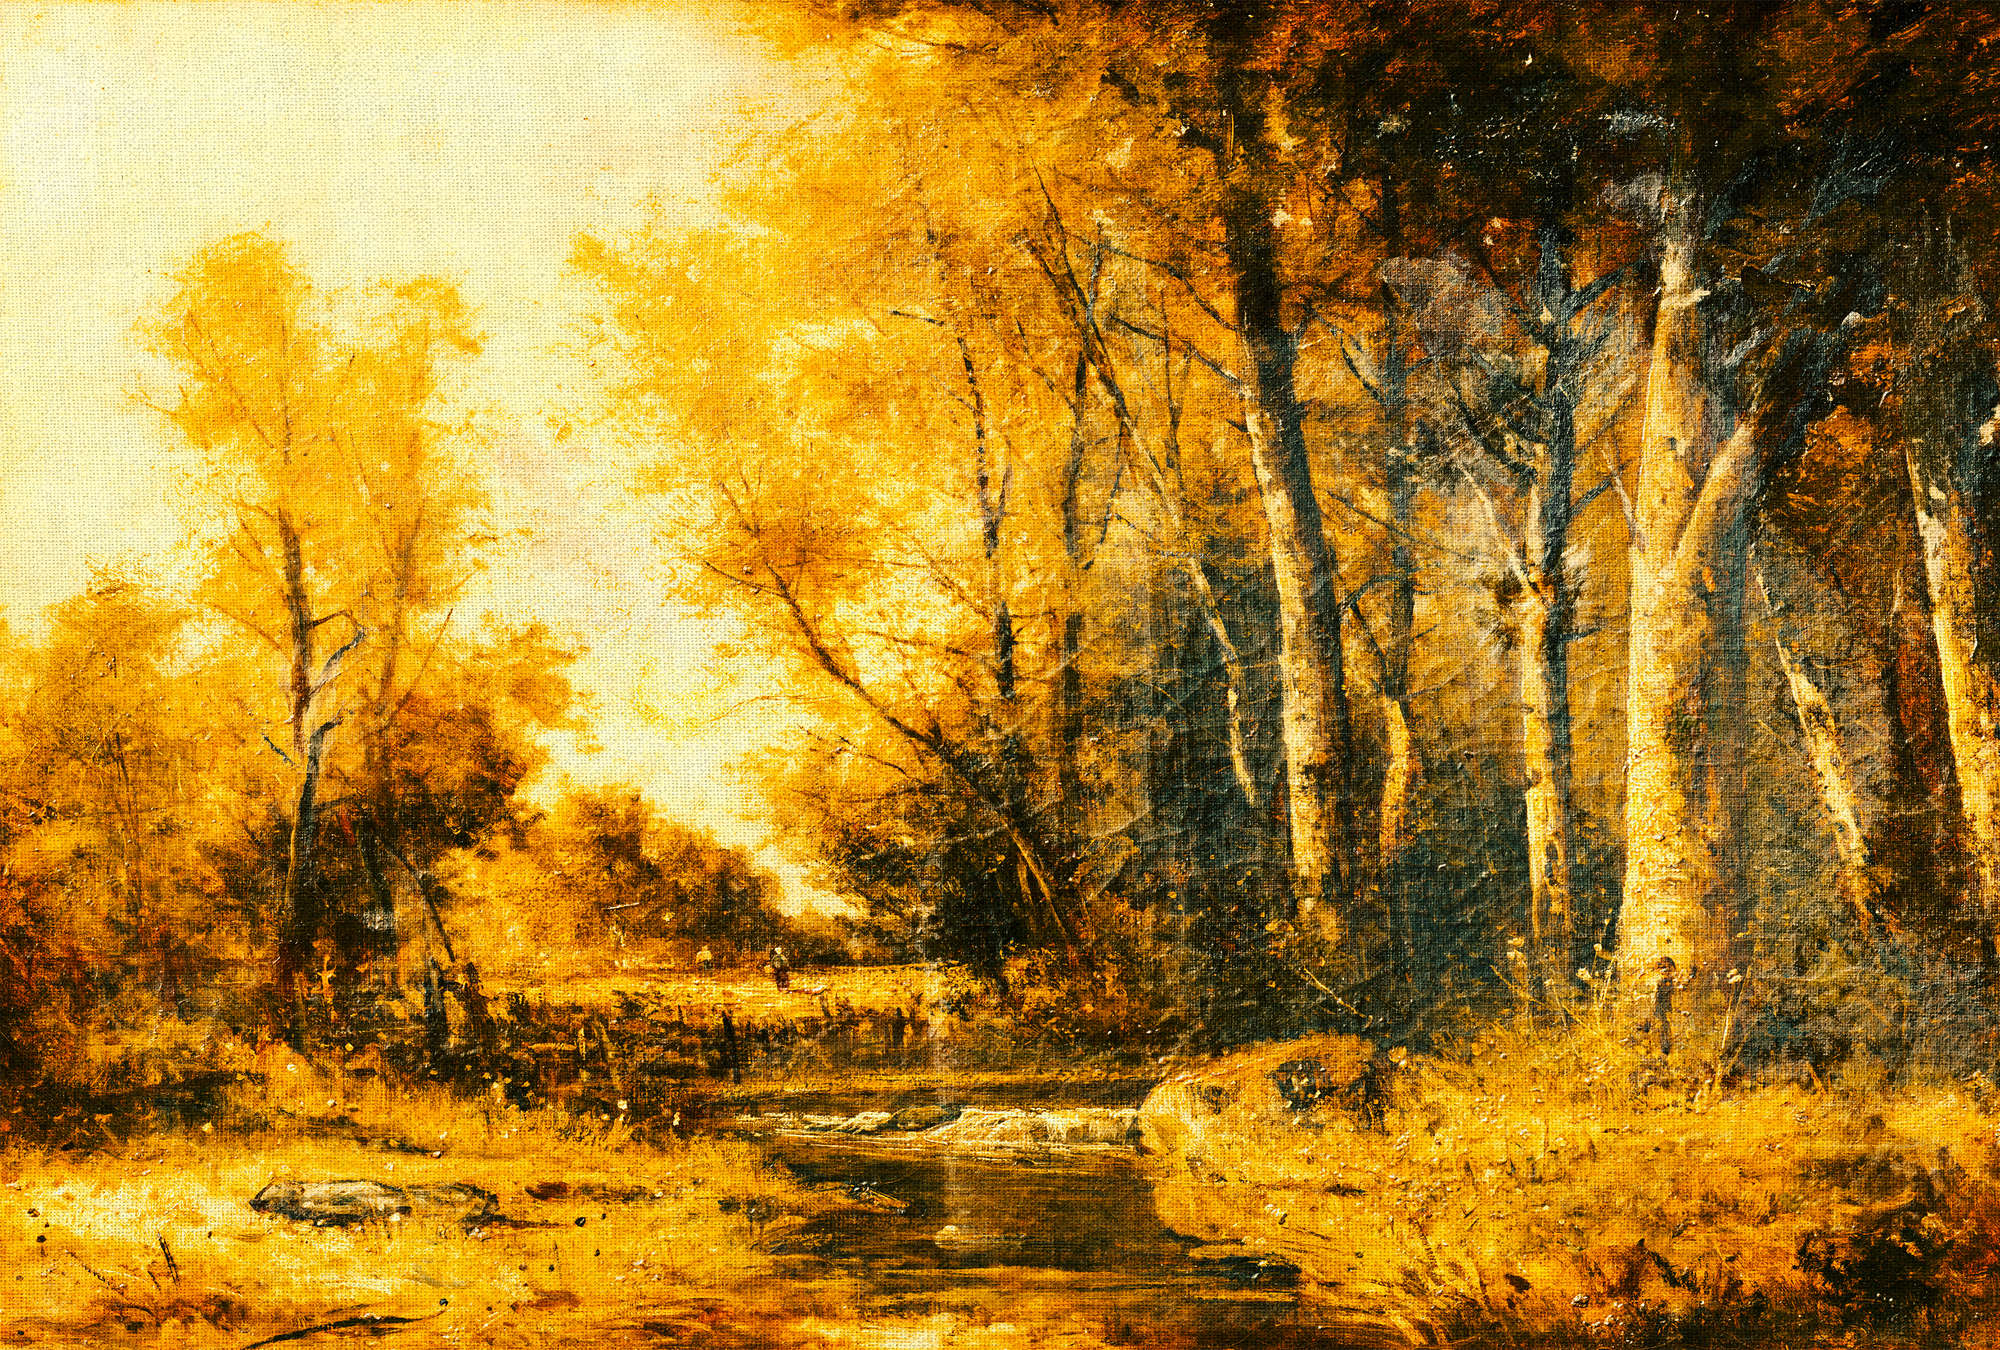             Papel pintado de paisaje, bosque y río de estilo artístico - Amarillo, naranja, negro
        